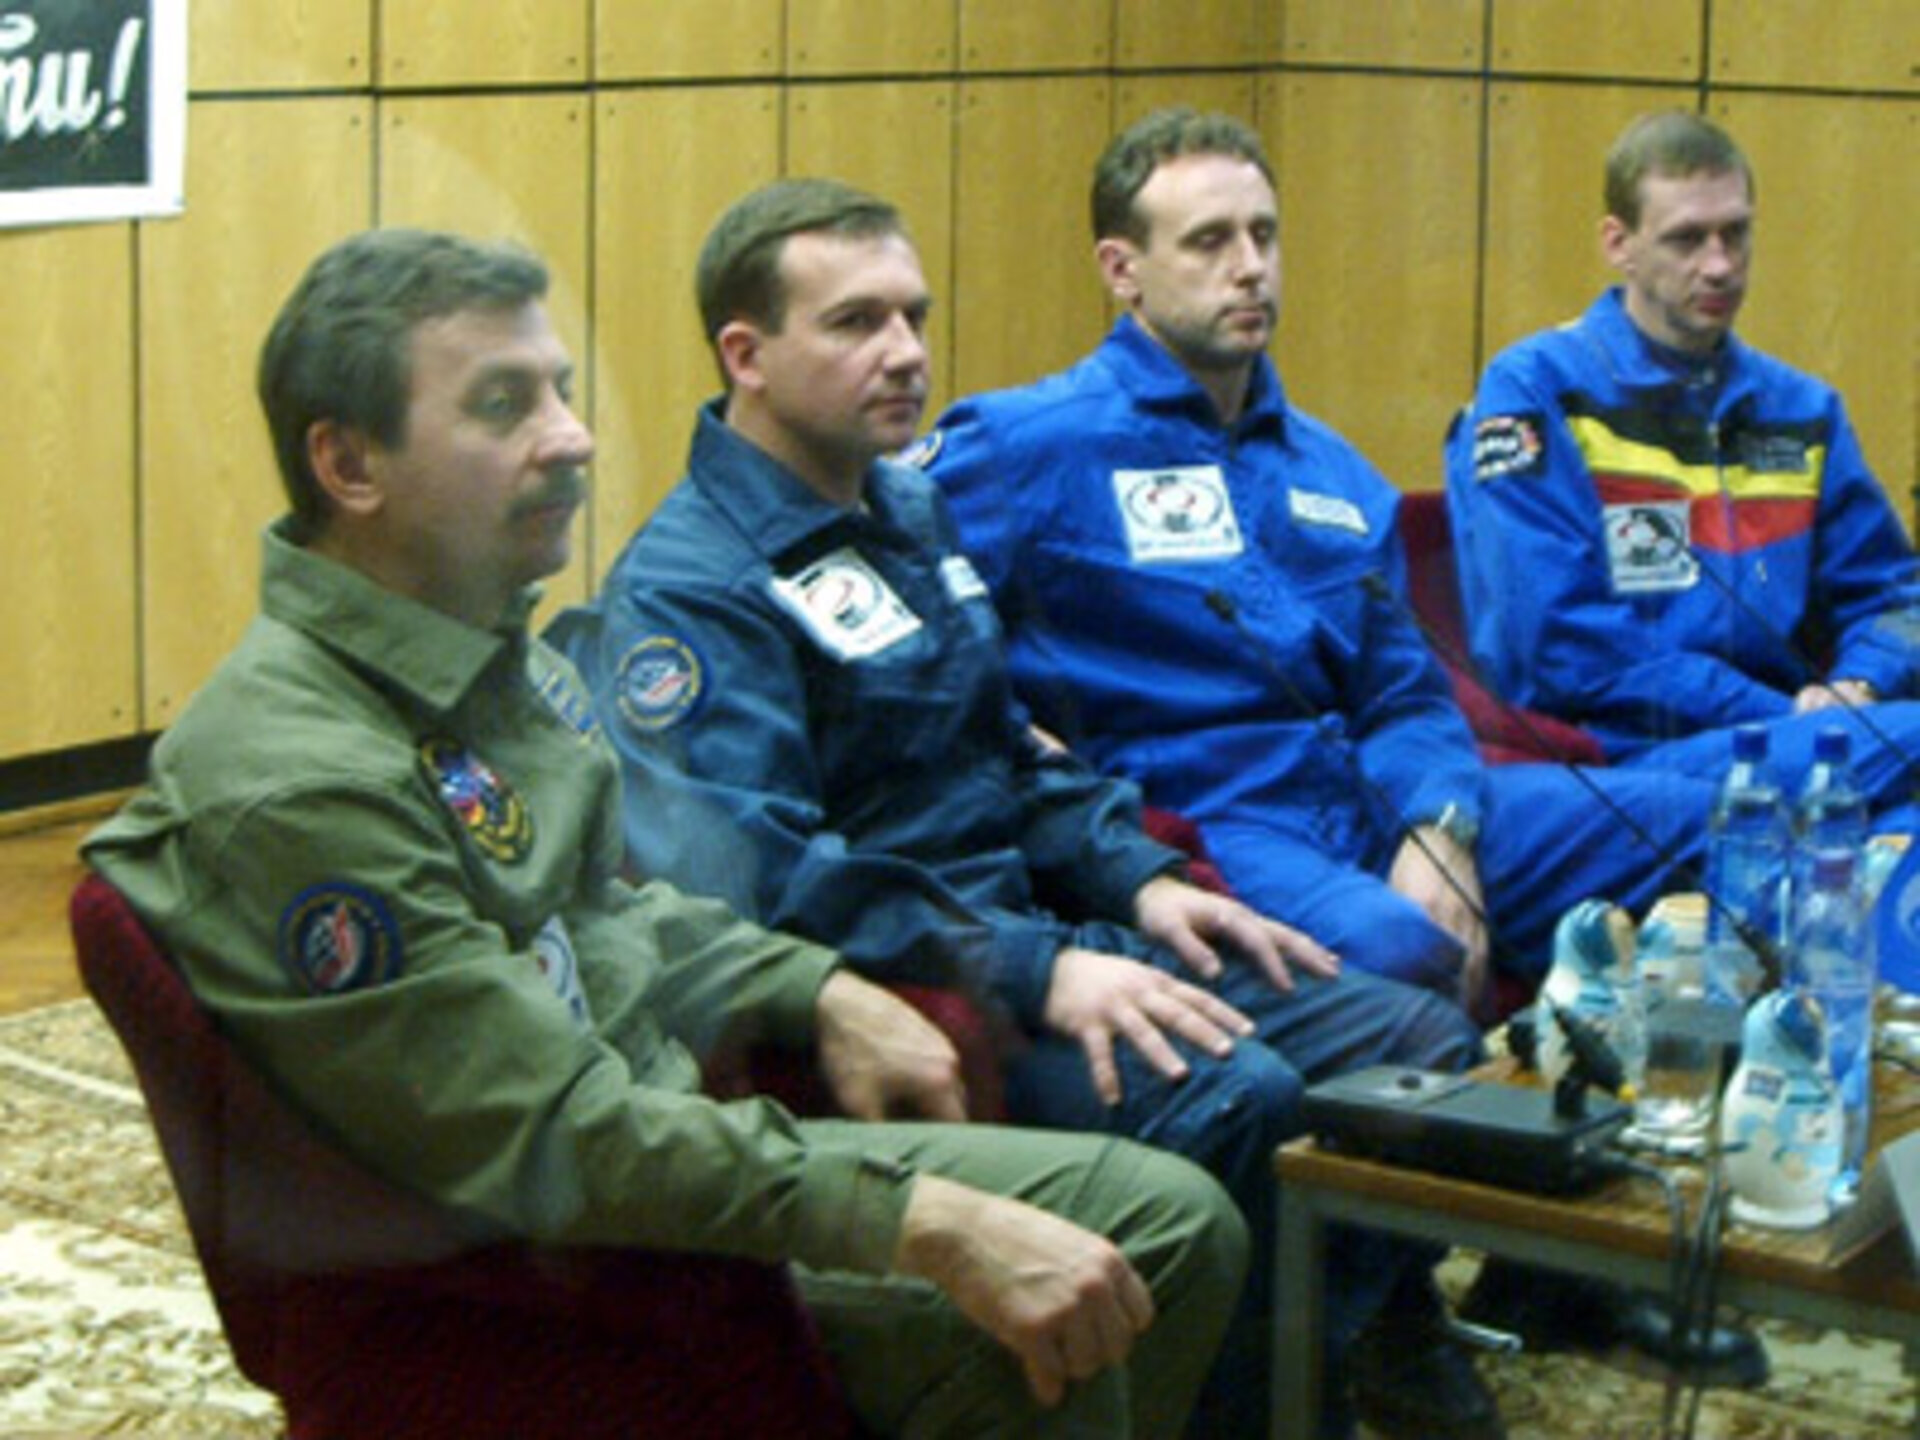 29 Oktober. De traditionele persconferentie voor de lancering van de bemanning en reserve Aleksandr Lazoetkin